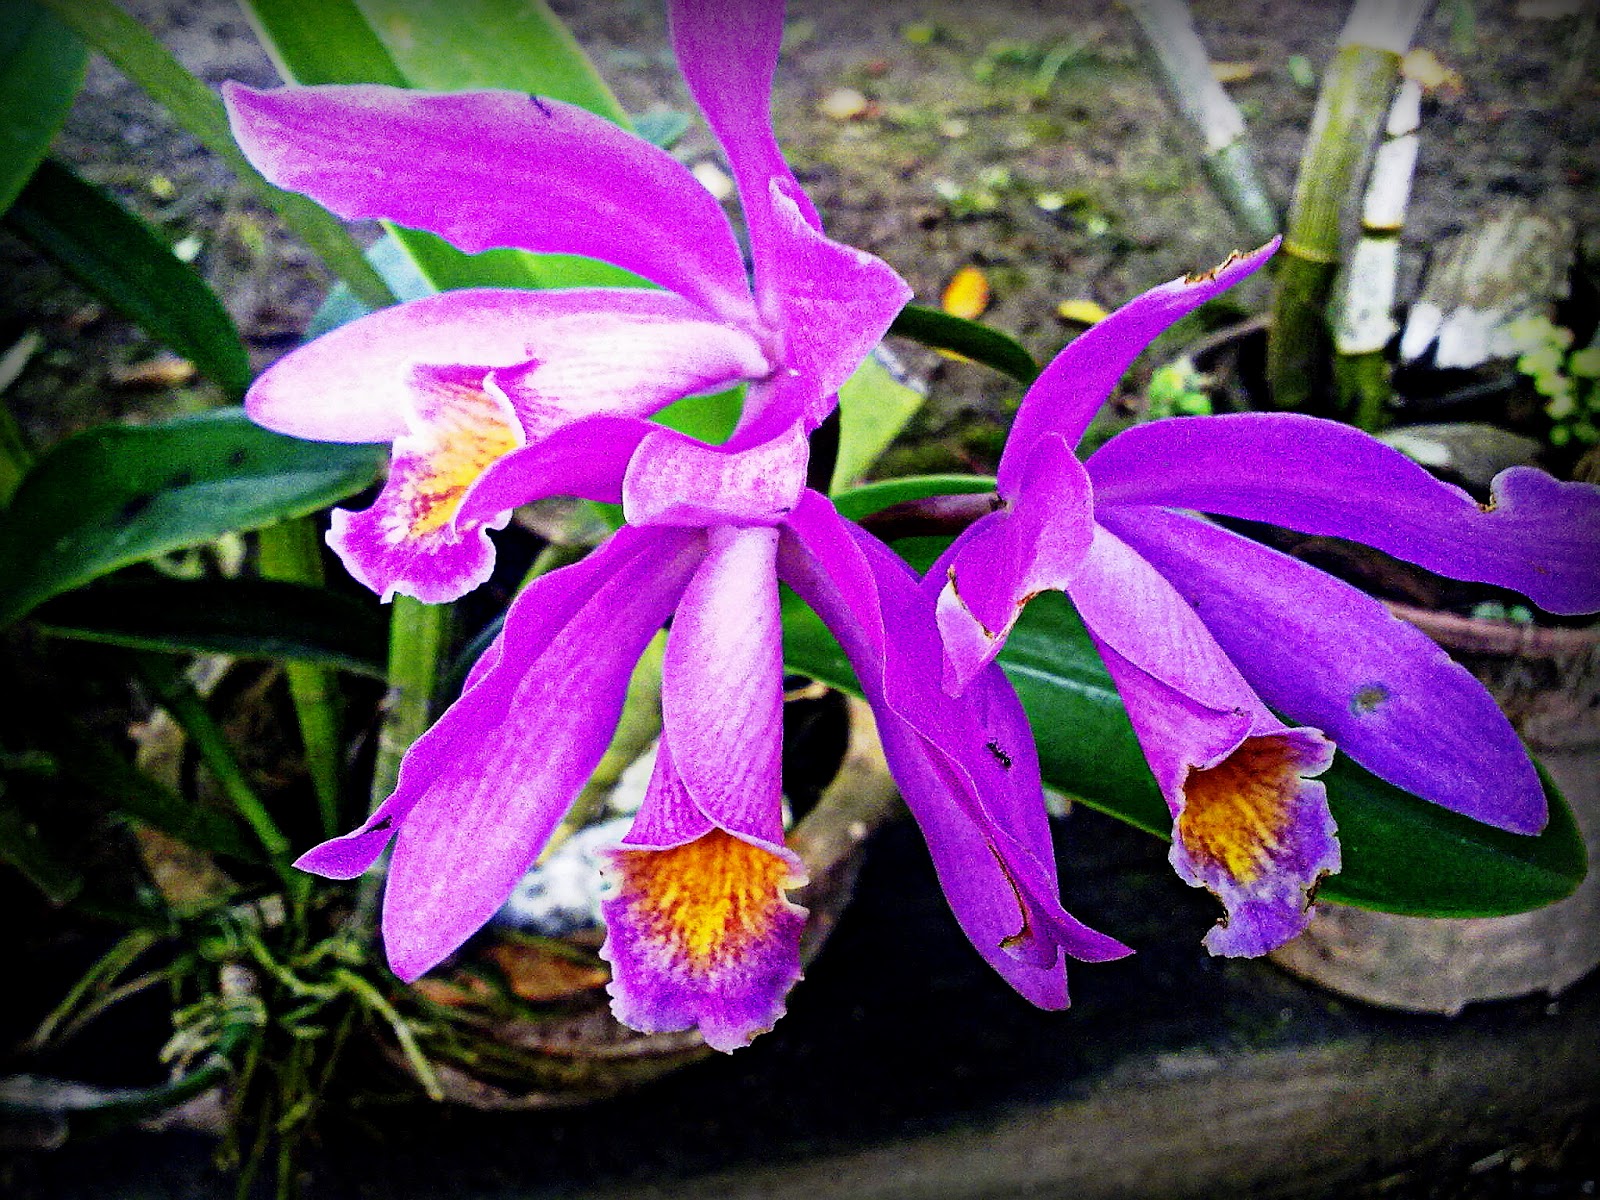  Gambar  Nama Bunga  Malaysia Orchid Hybrid Gambar  Orkid  